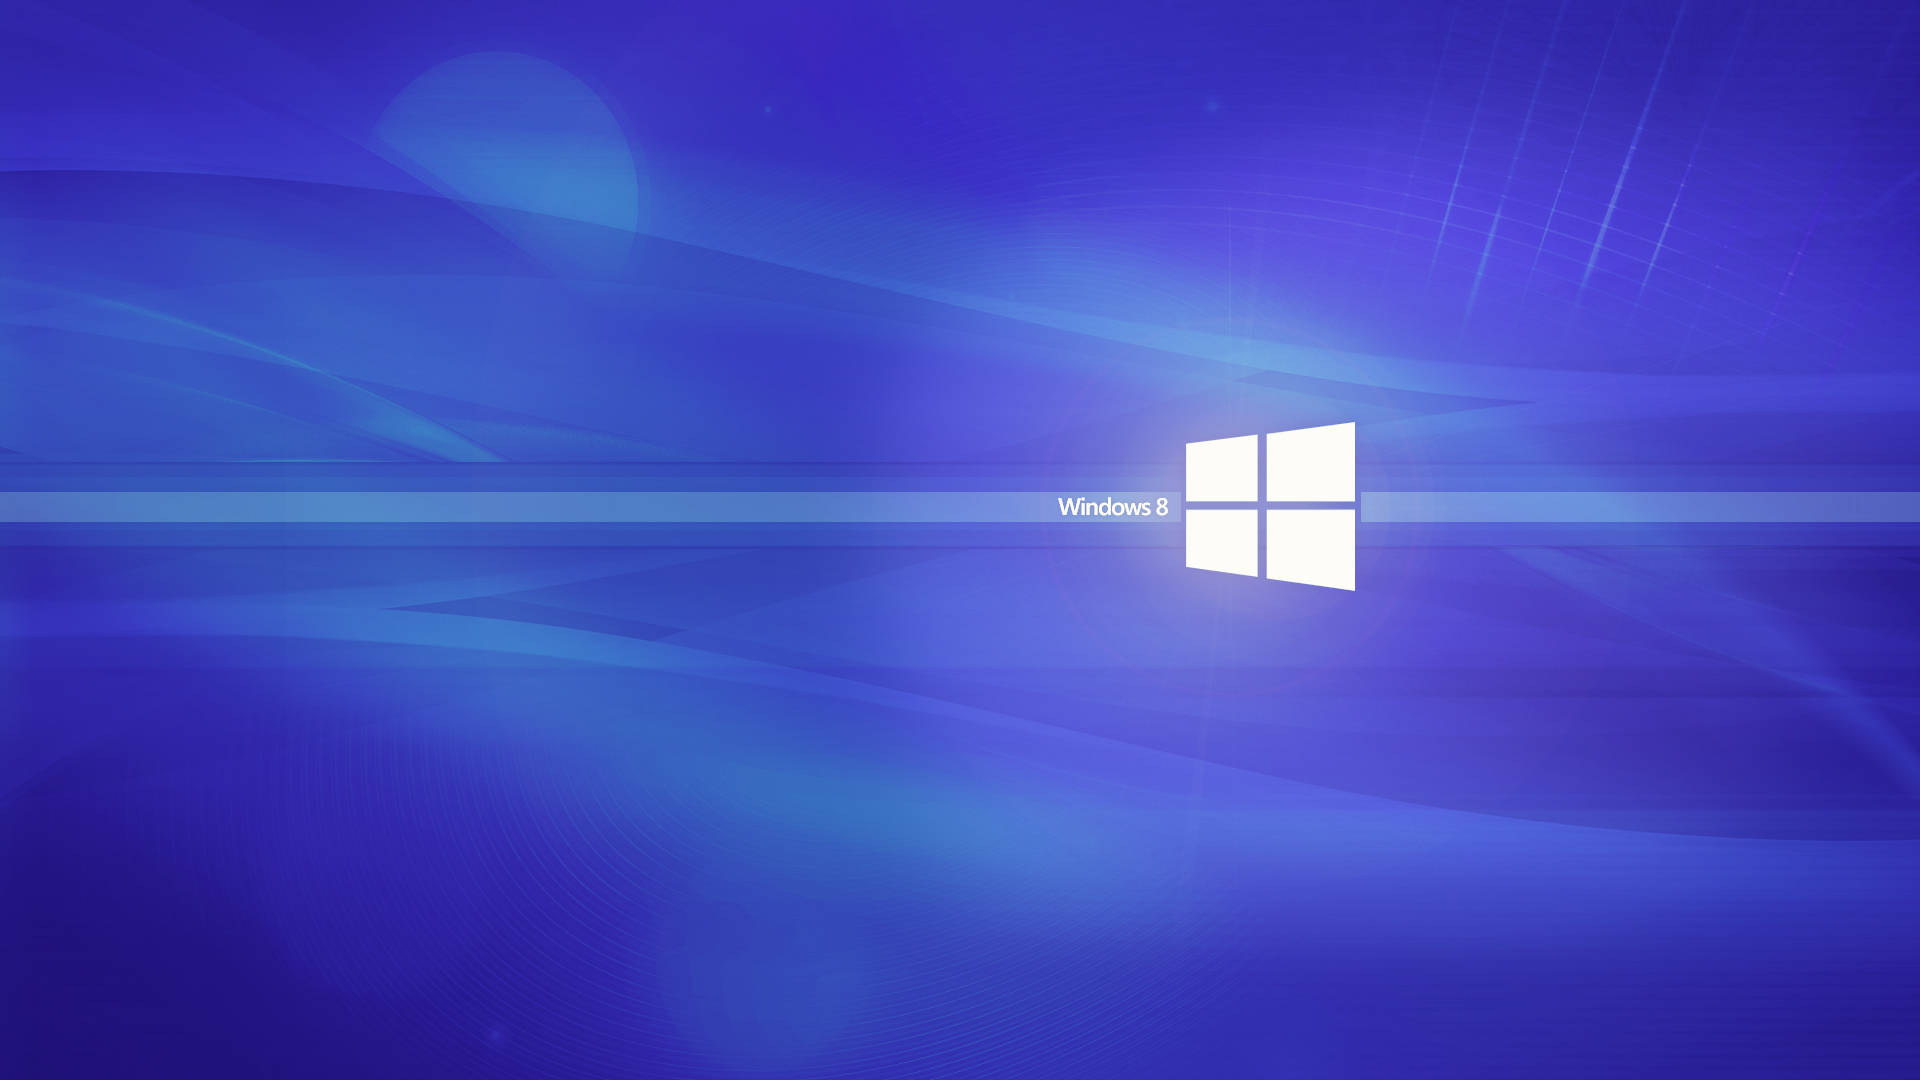 Fondode Pantalla Abstracto De Windows 8 En Color Azul Resplandeciente. Fondo de pantalla